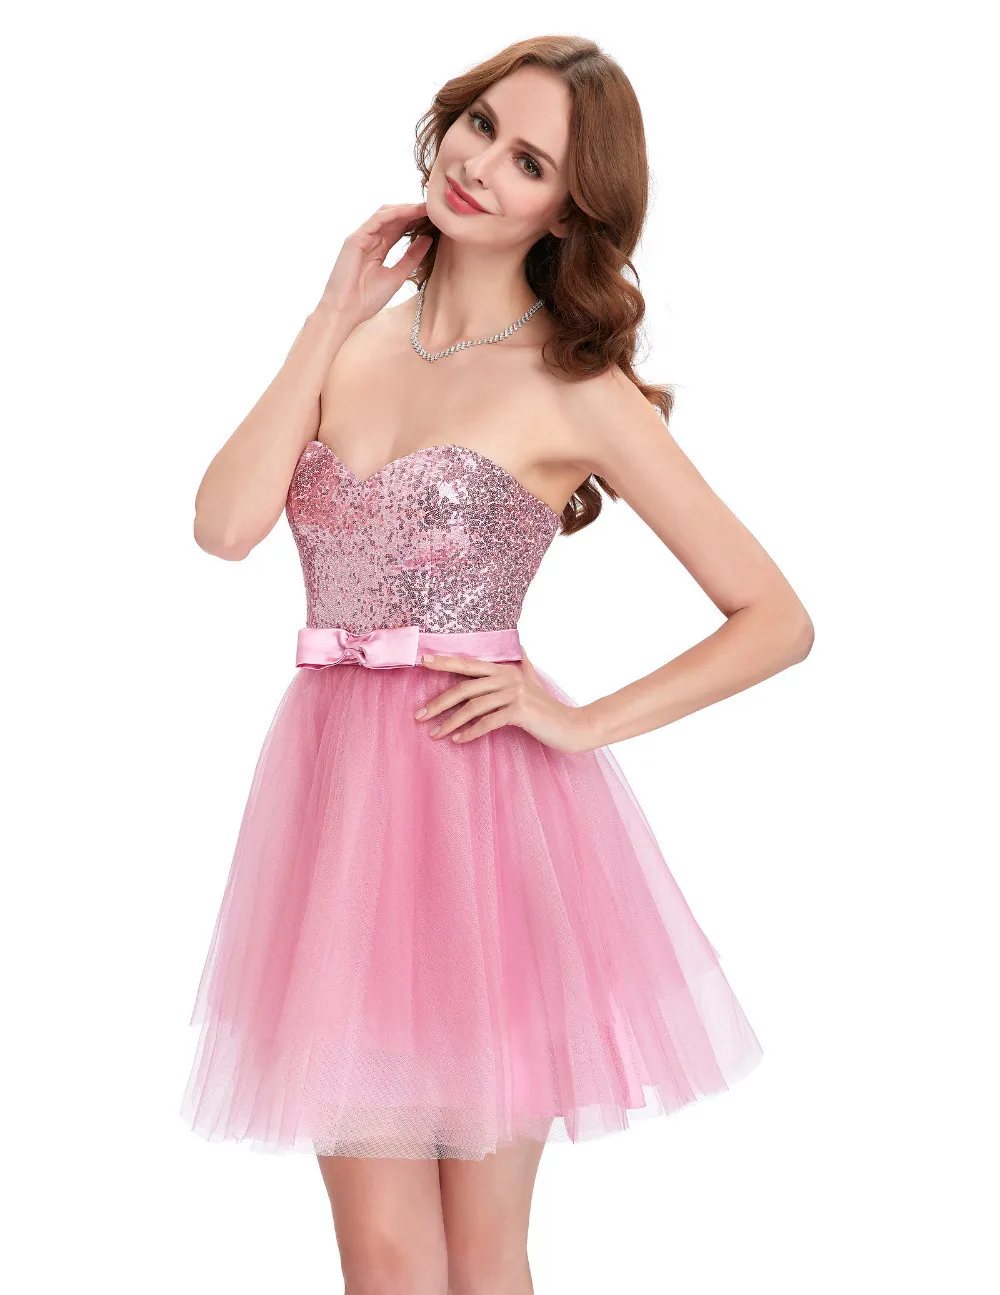 Розовое тюлевое платье. Видео розовое платье